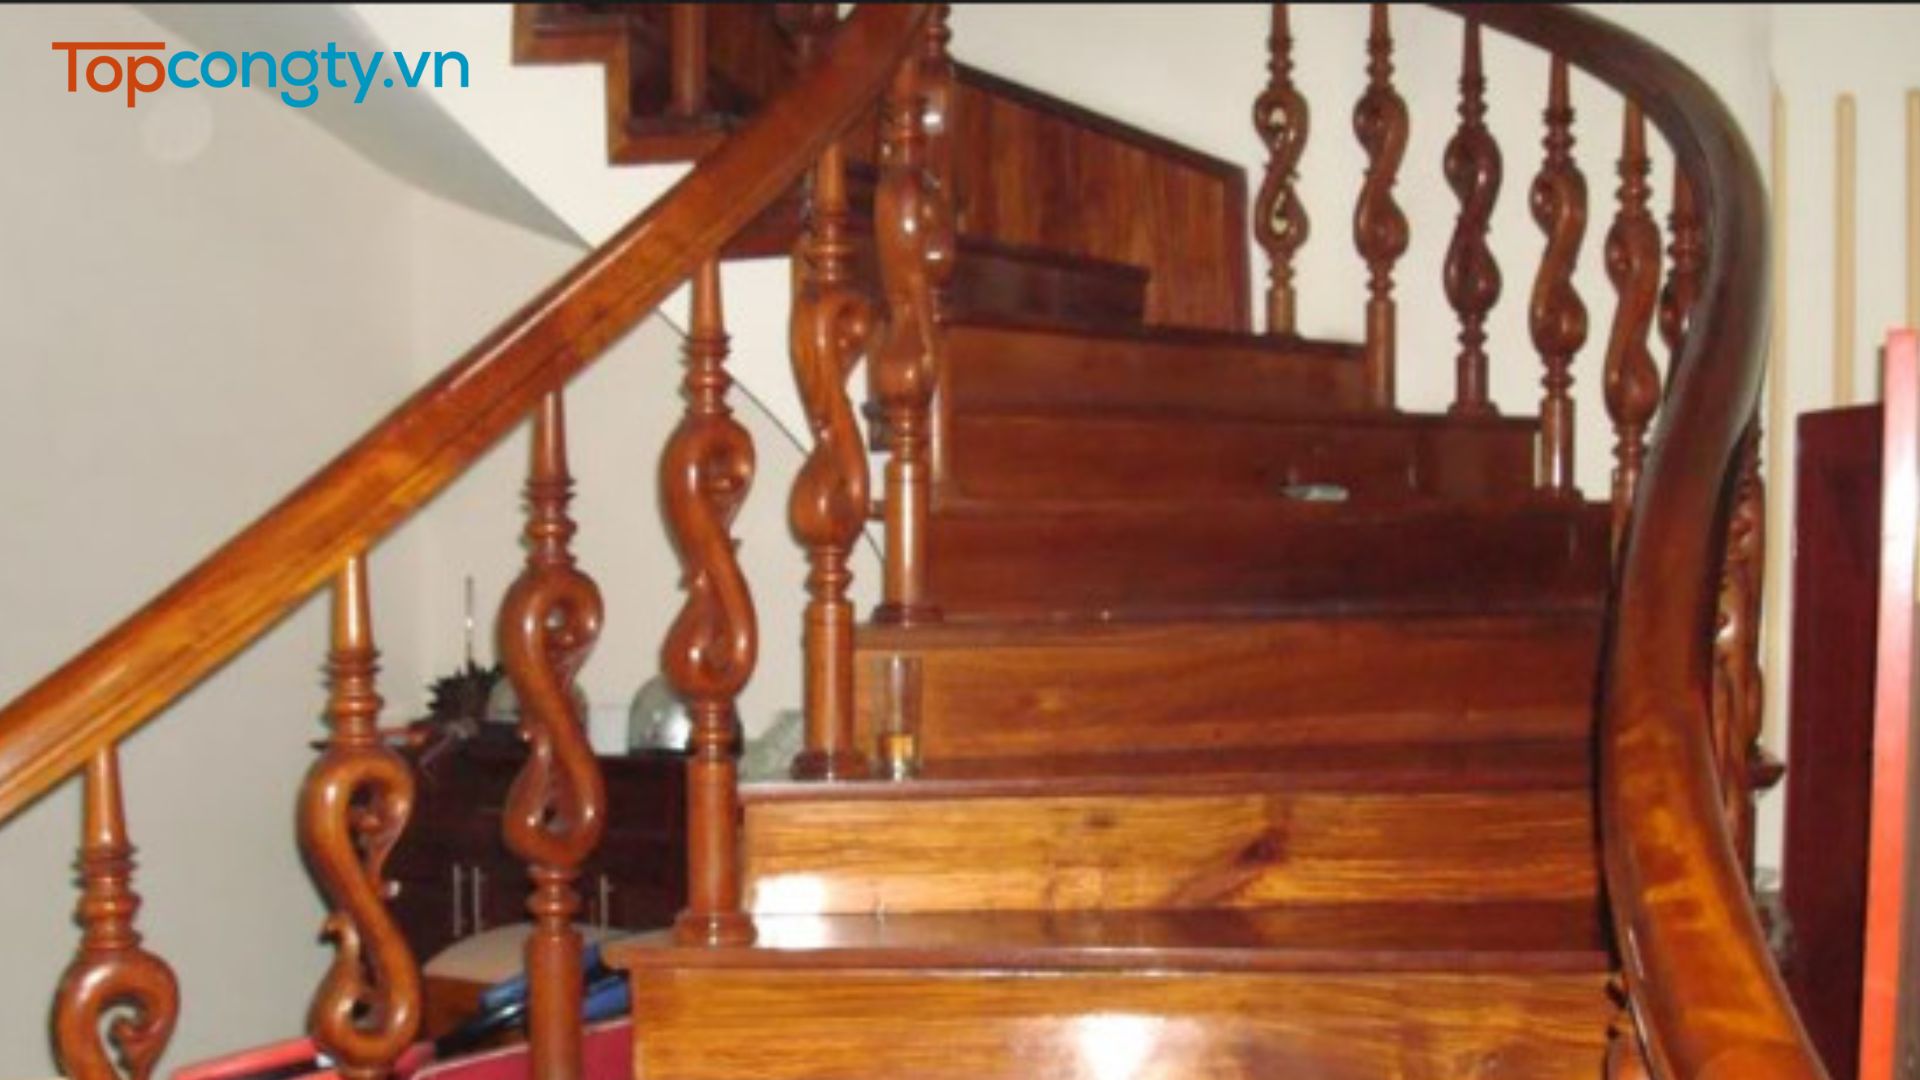 Nội thất Duy Nghĩa - Nơi sửa chữa đồ gỗ tại nhà Hà Nội chất lượng và đáng tin cậy